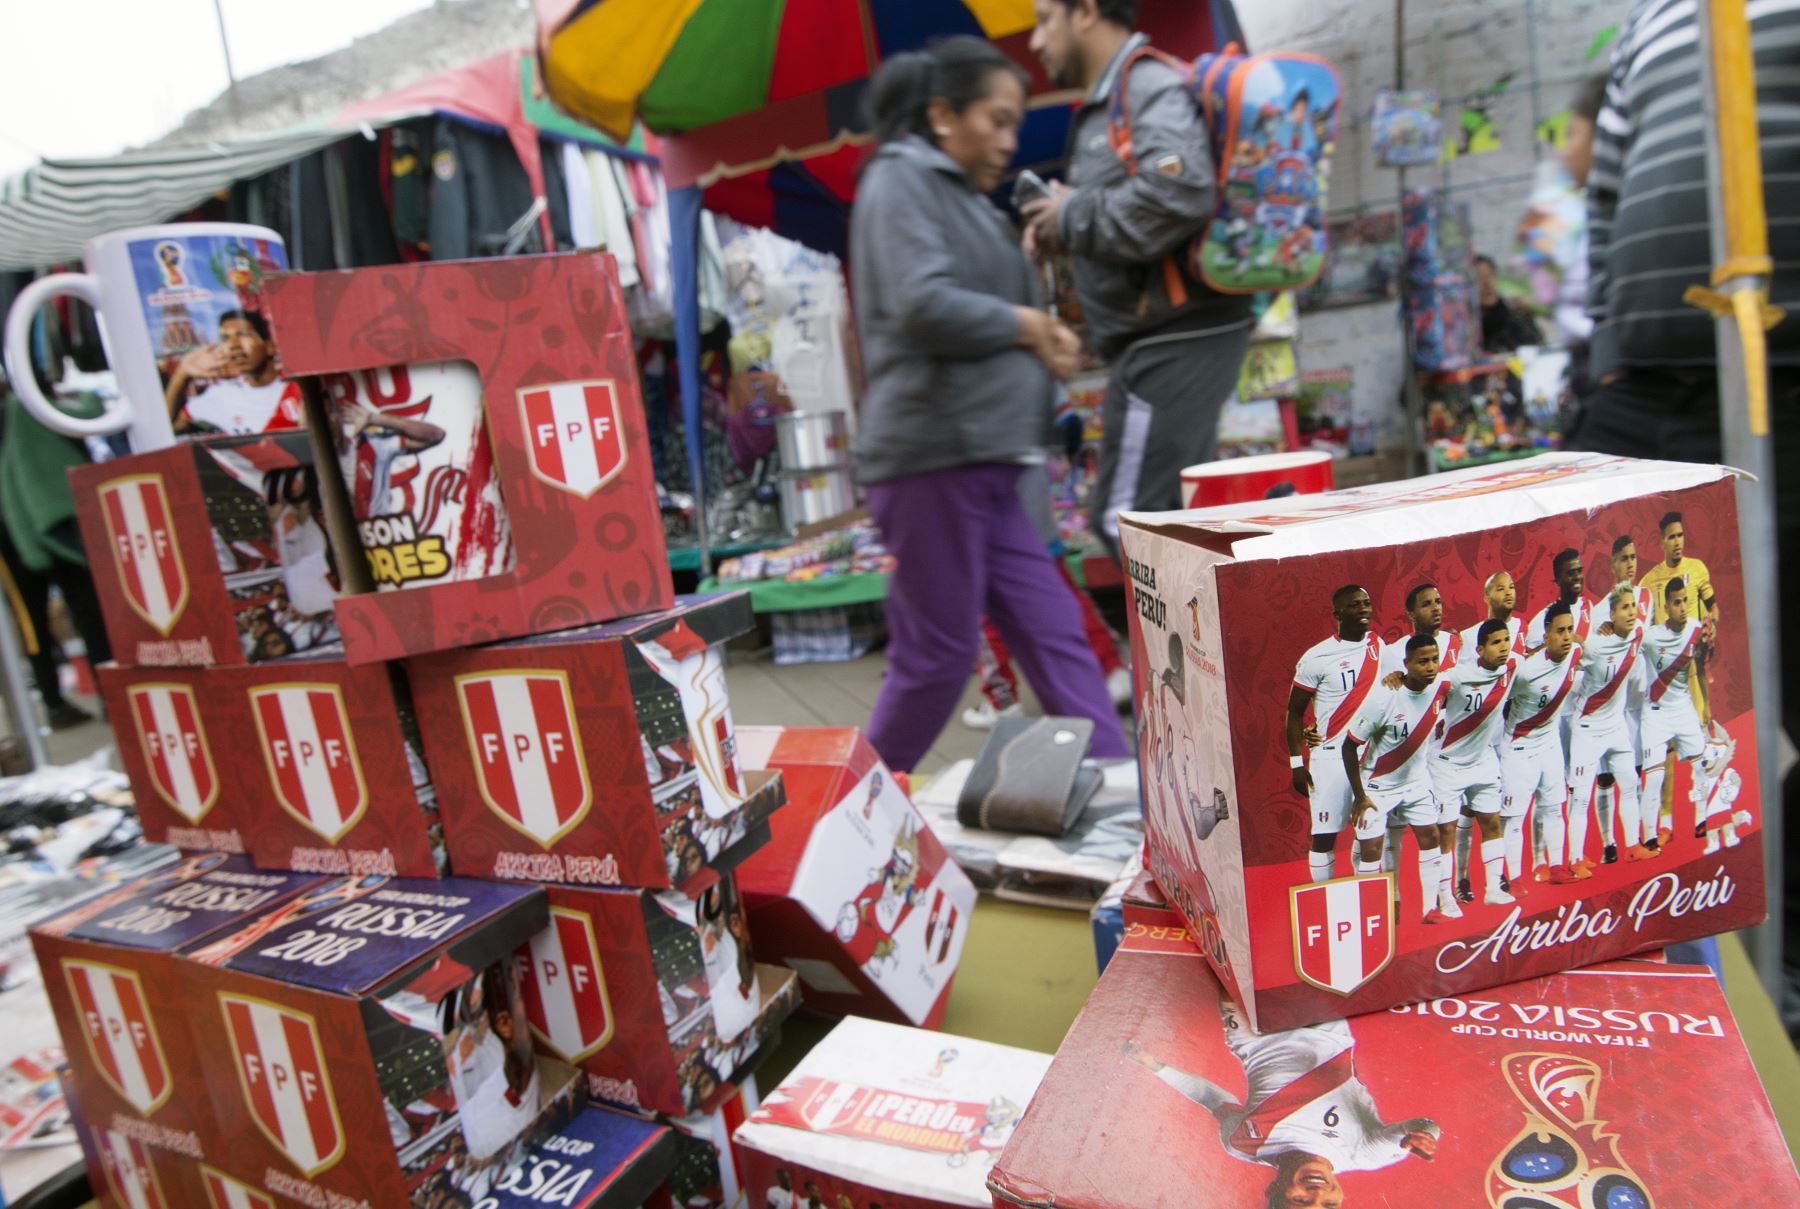 Productos diversos, desde vajilla hasta sombreros y ropa con los colores de la bandera peruana, blanca y roja, y frases como "Copa Mundial de la FIFA Rusia 2018" se venden por todo Lima. AFP